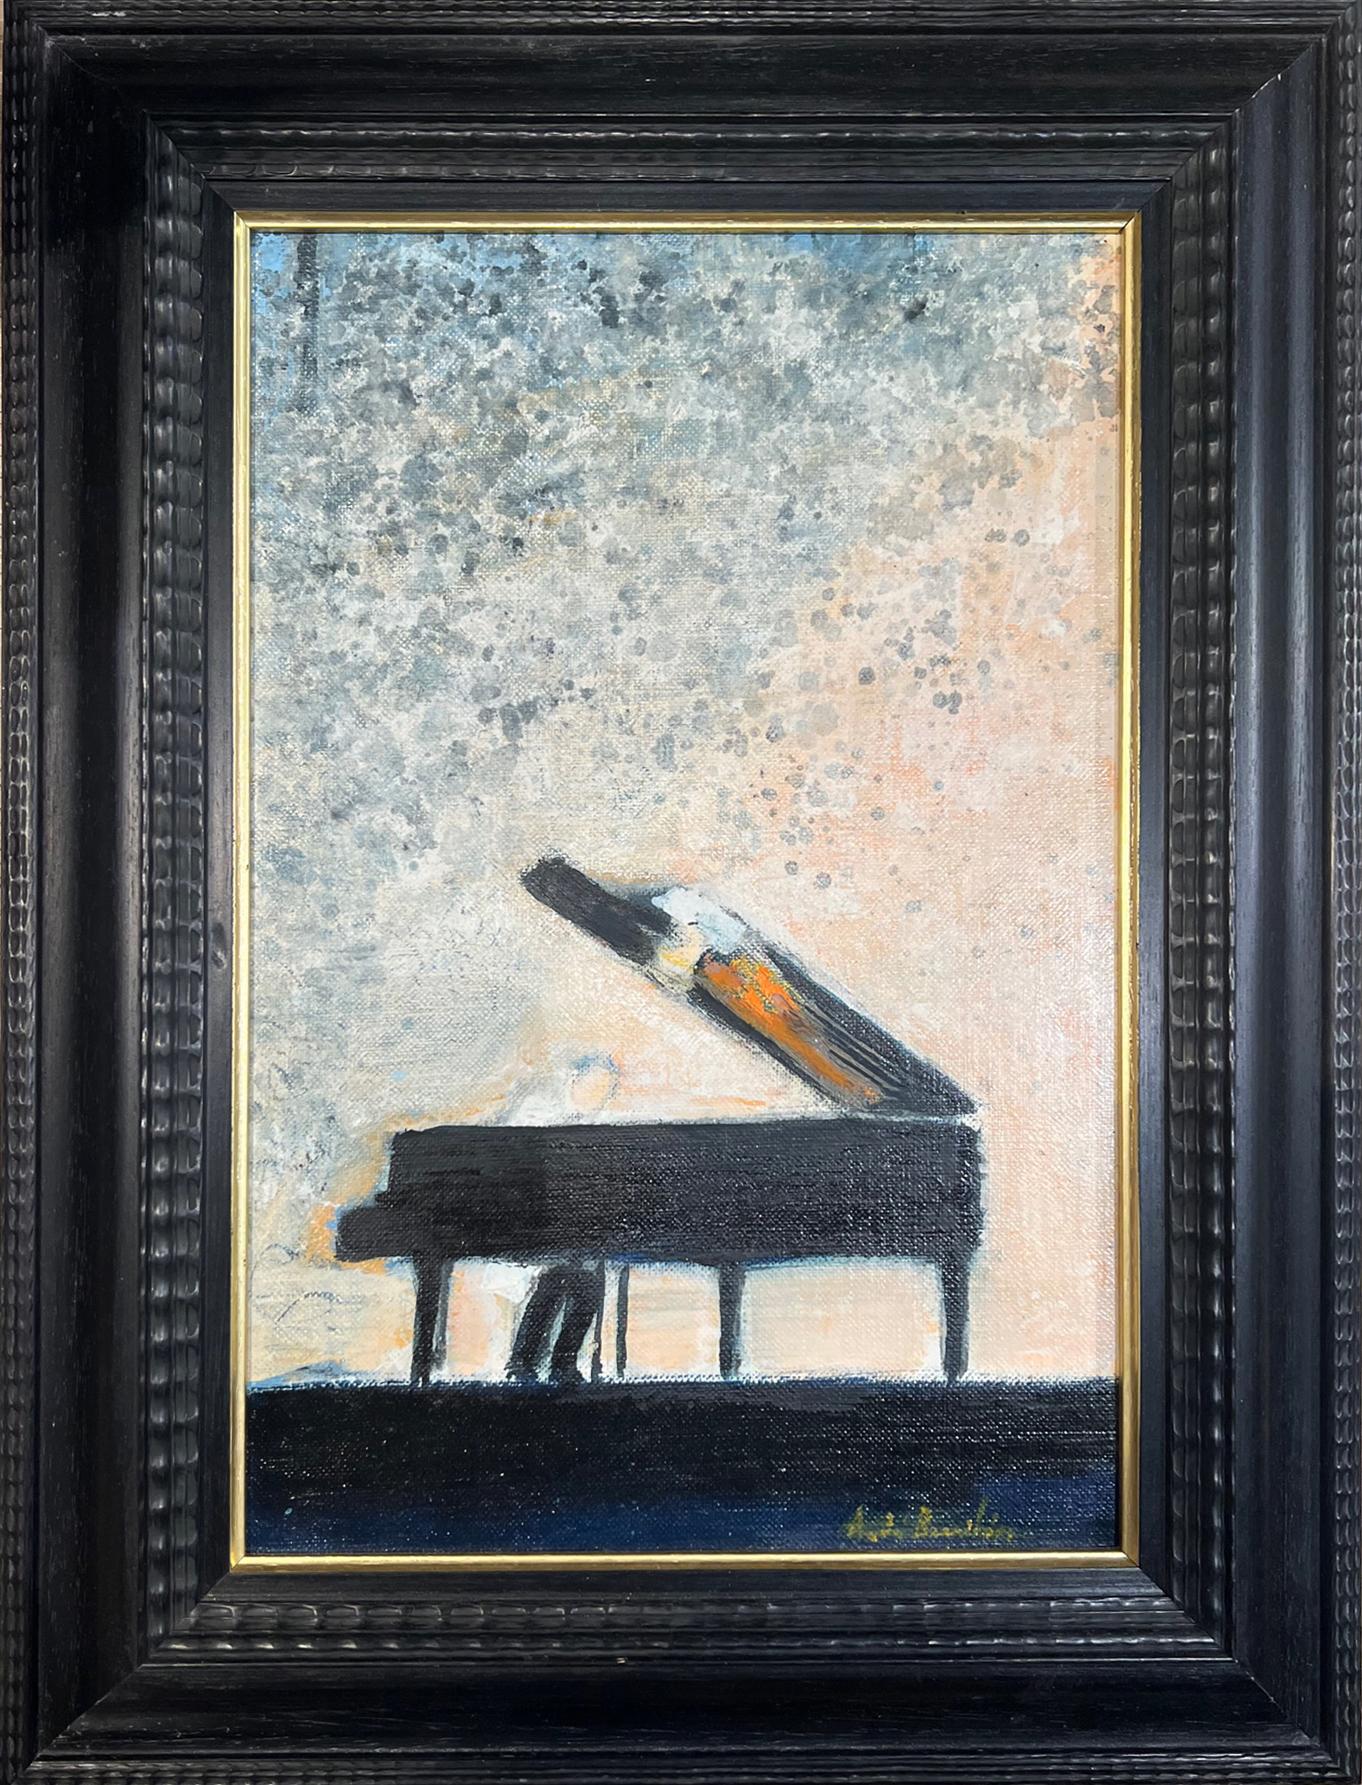 Figurative Painting André Brasilier - Peinture à l'huile sur toile Piano dans un paysage - Peinture rare de l'artiste français Brasilier 